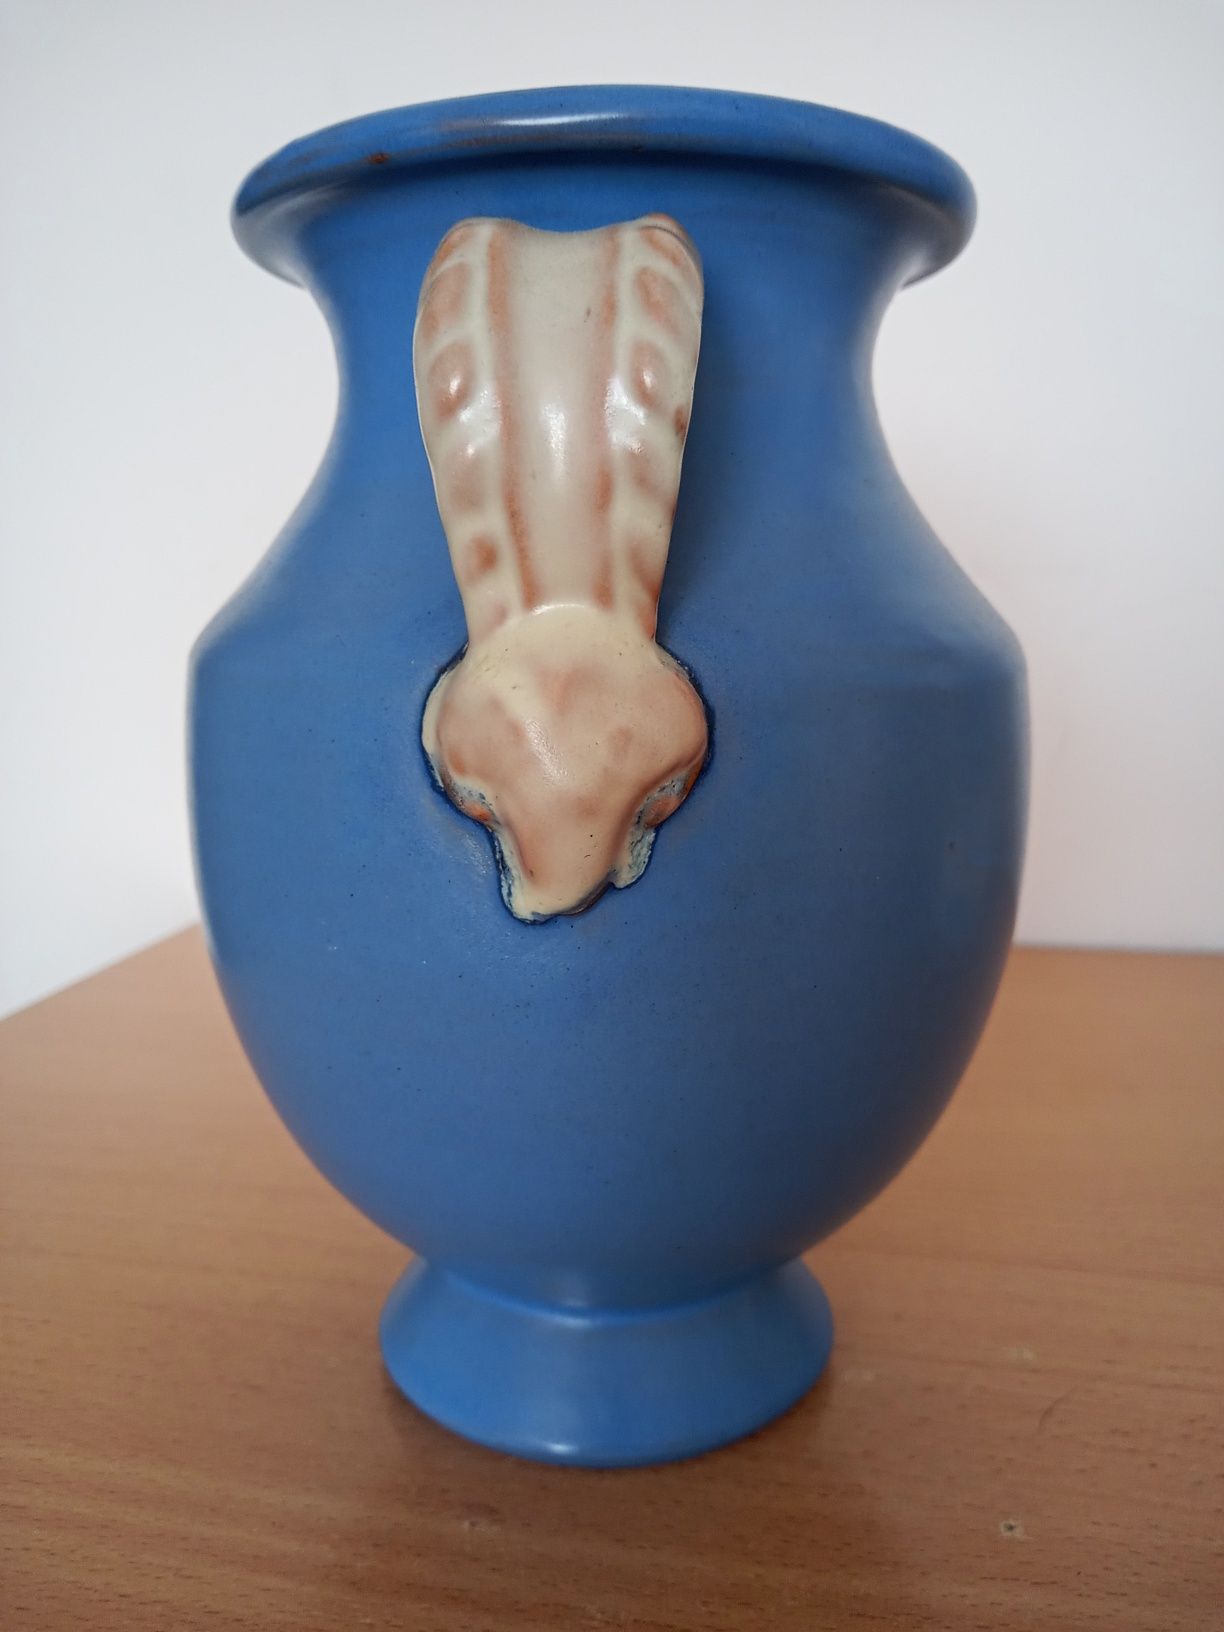 Niebieski wazon ceramiczny. Szwecja. Gabriel. Lata 40-te.